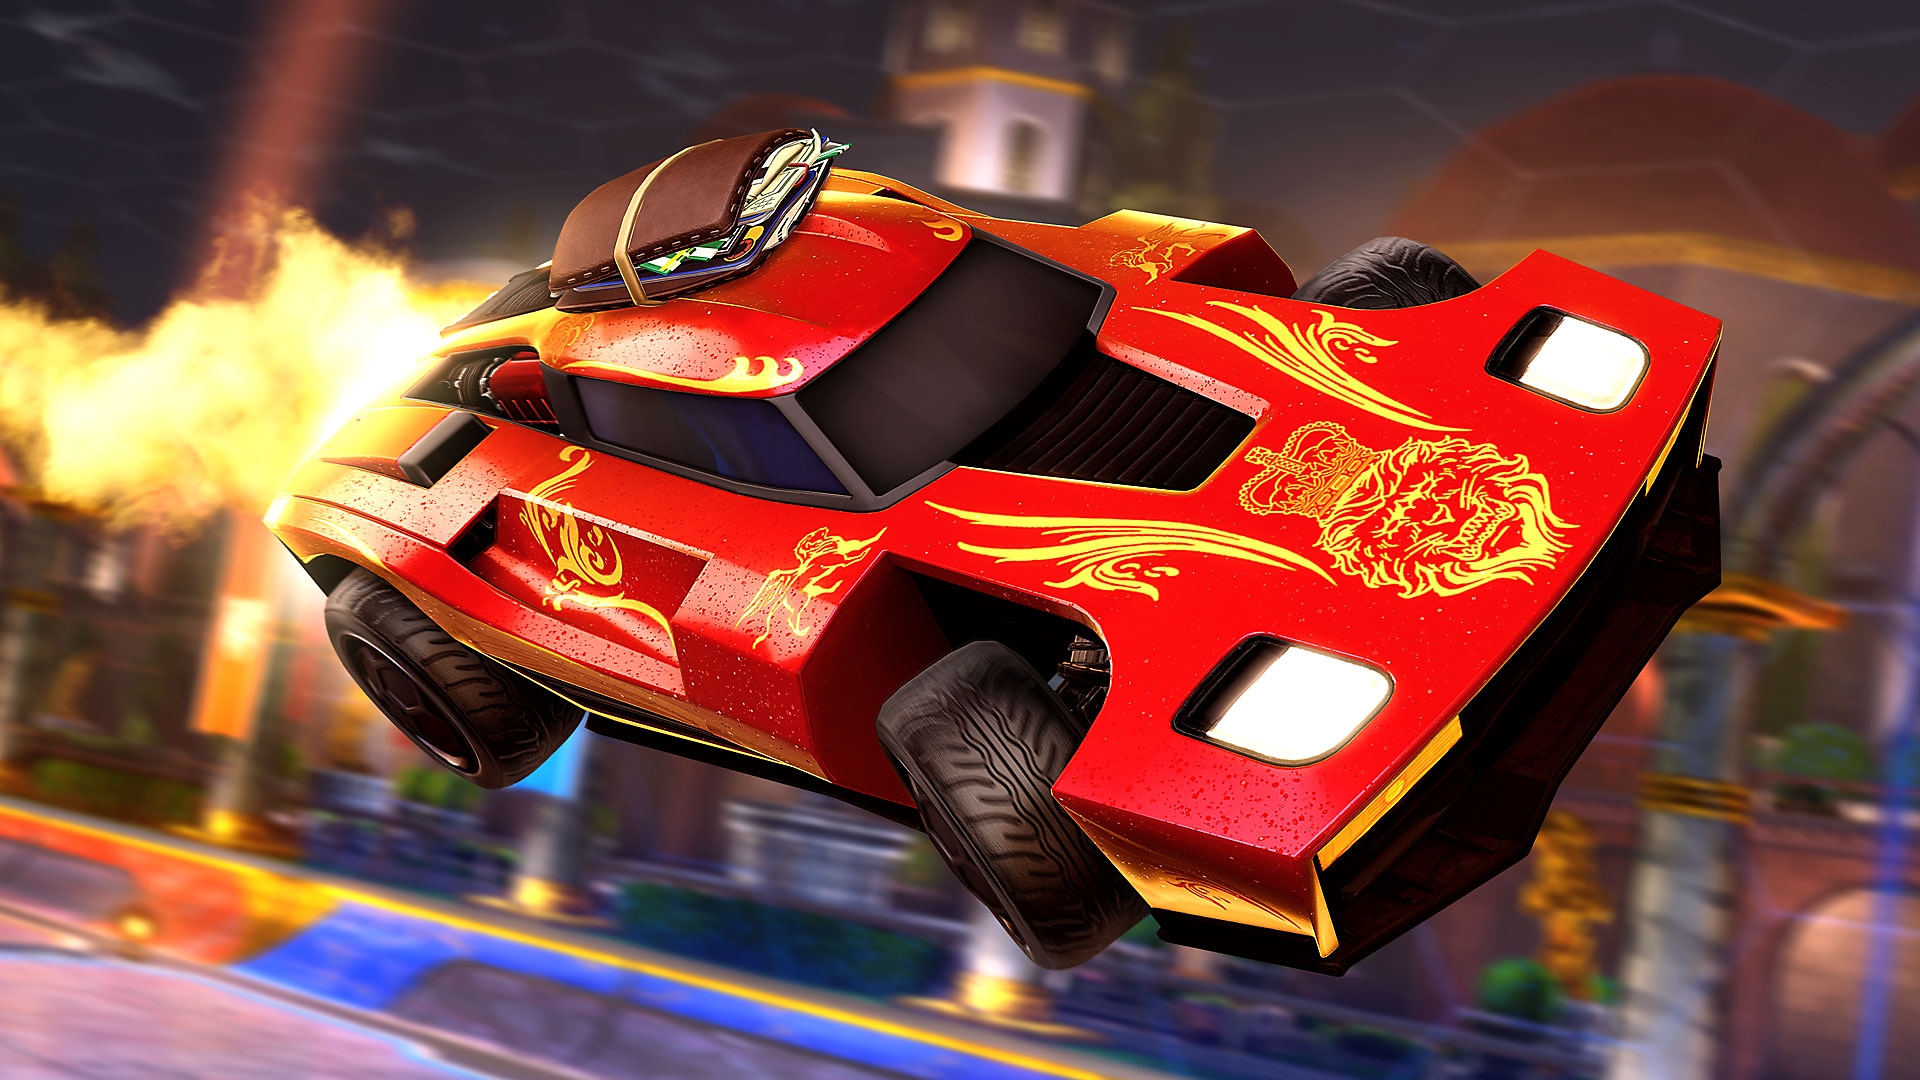 Rocket League-screenshot van een rode sportwagen met vlammen uit de uitlaat